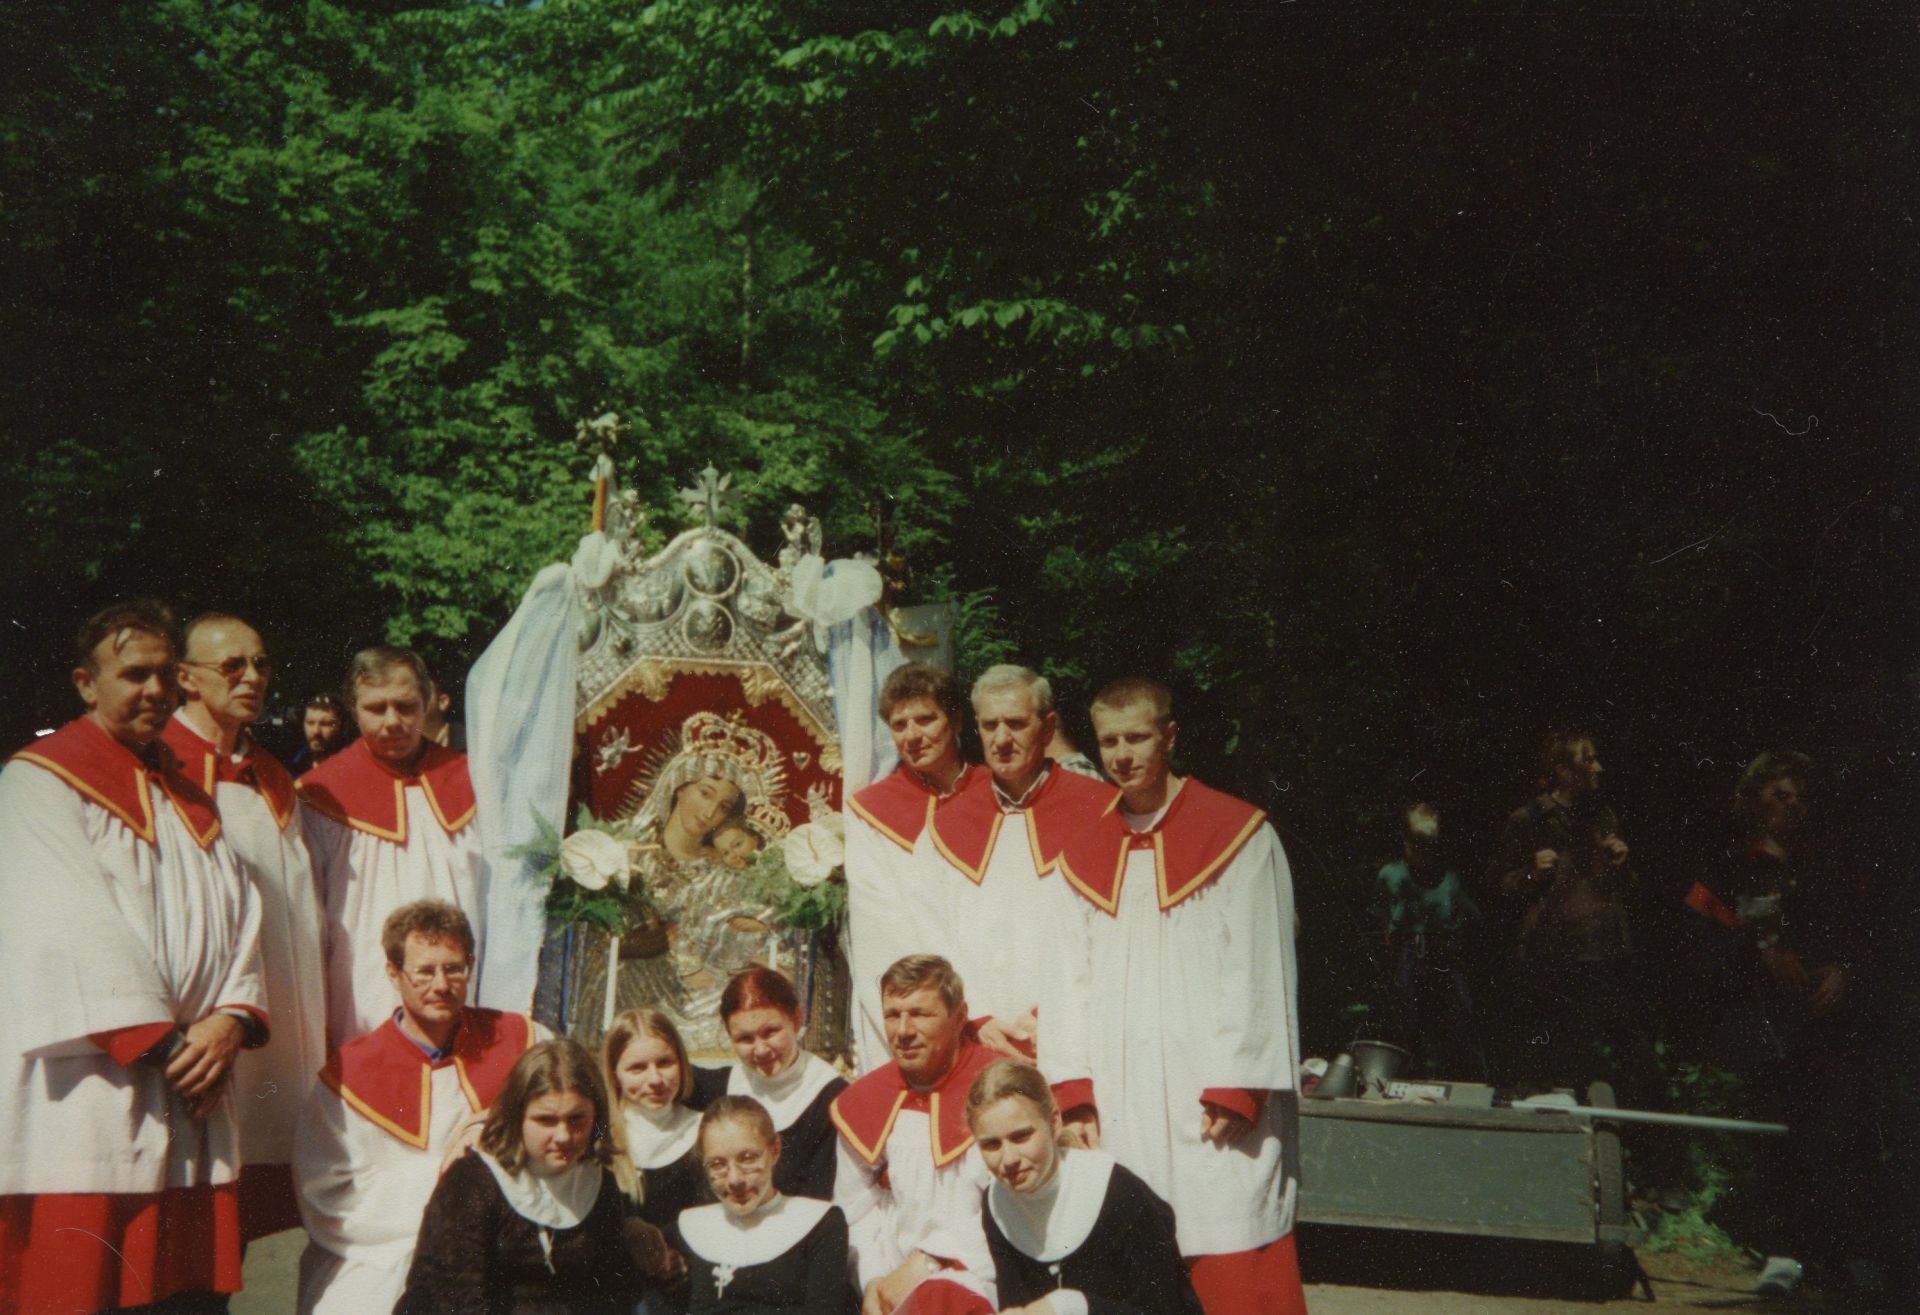 Pielgrzymka z Gdańska-Oliwy na Kalwarię Wejherowską. Lektorzy z feretronem oraz grupa dziewczyn z pielgrzymki pozują do zdjęcia.